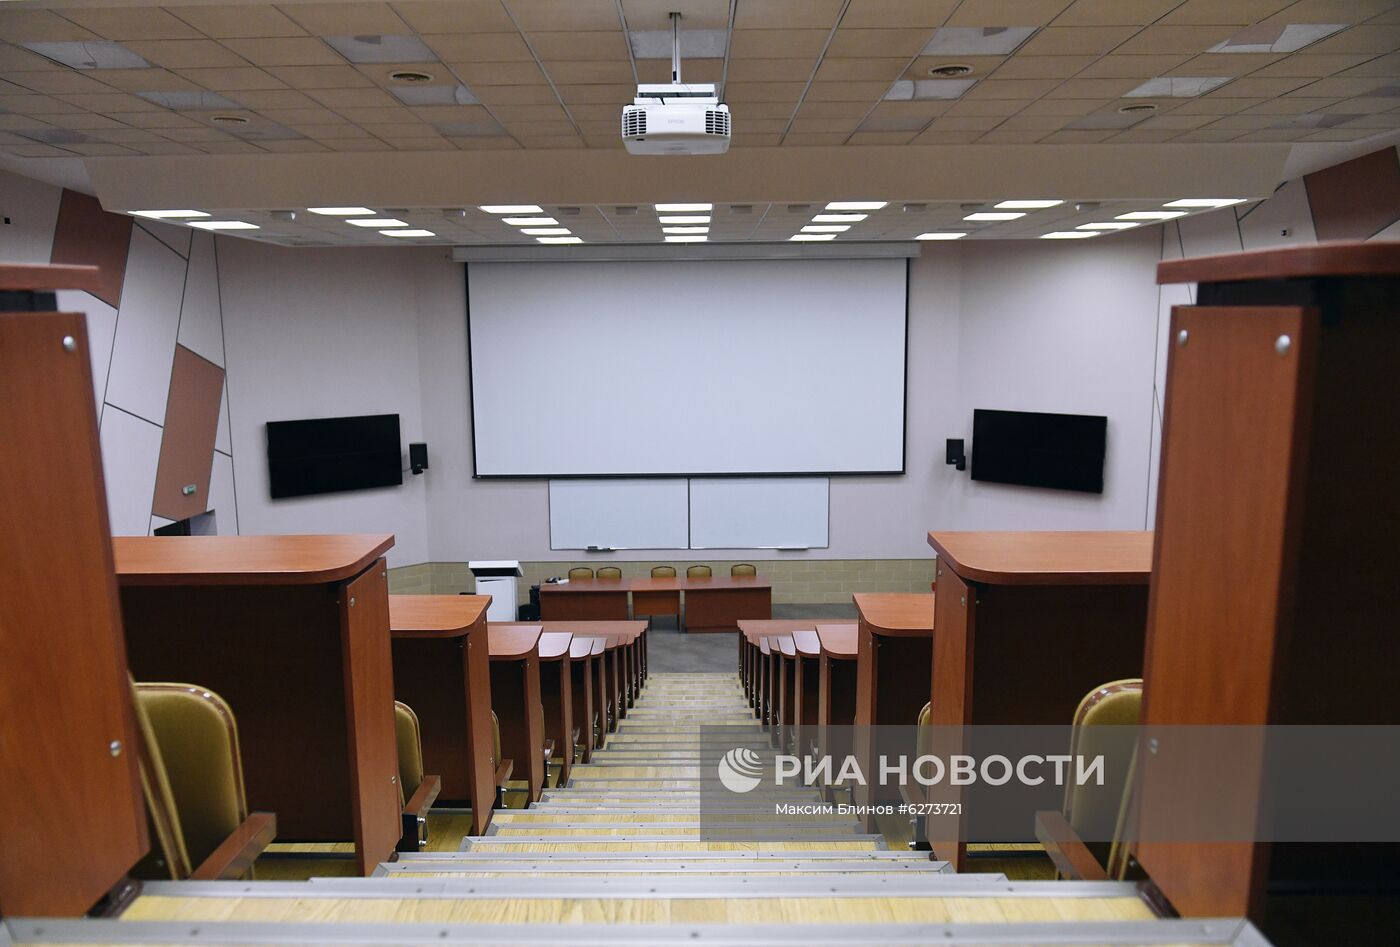 Работа приемной комиссии в московских университетах